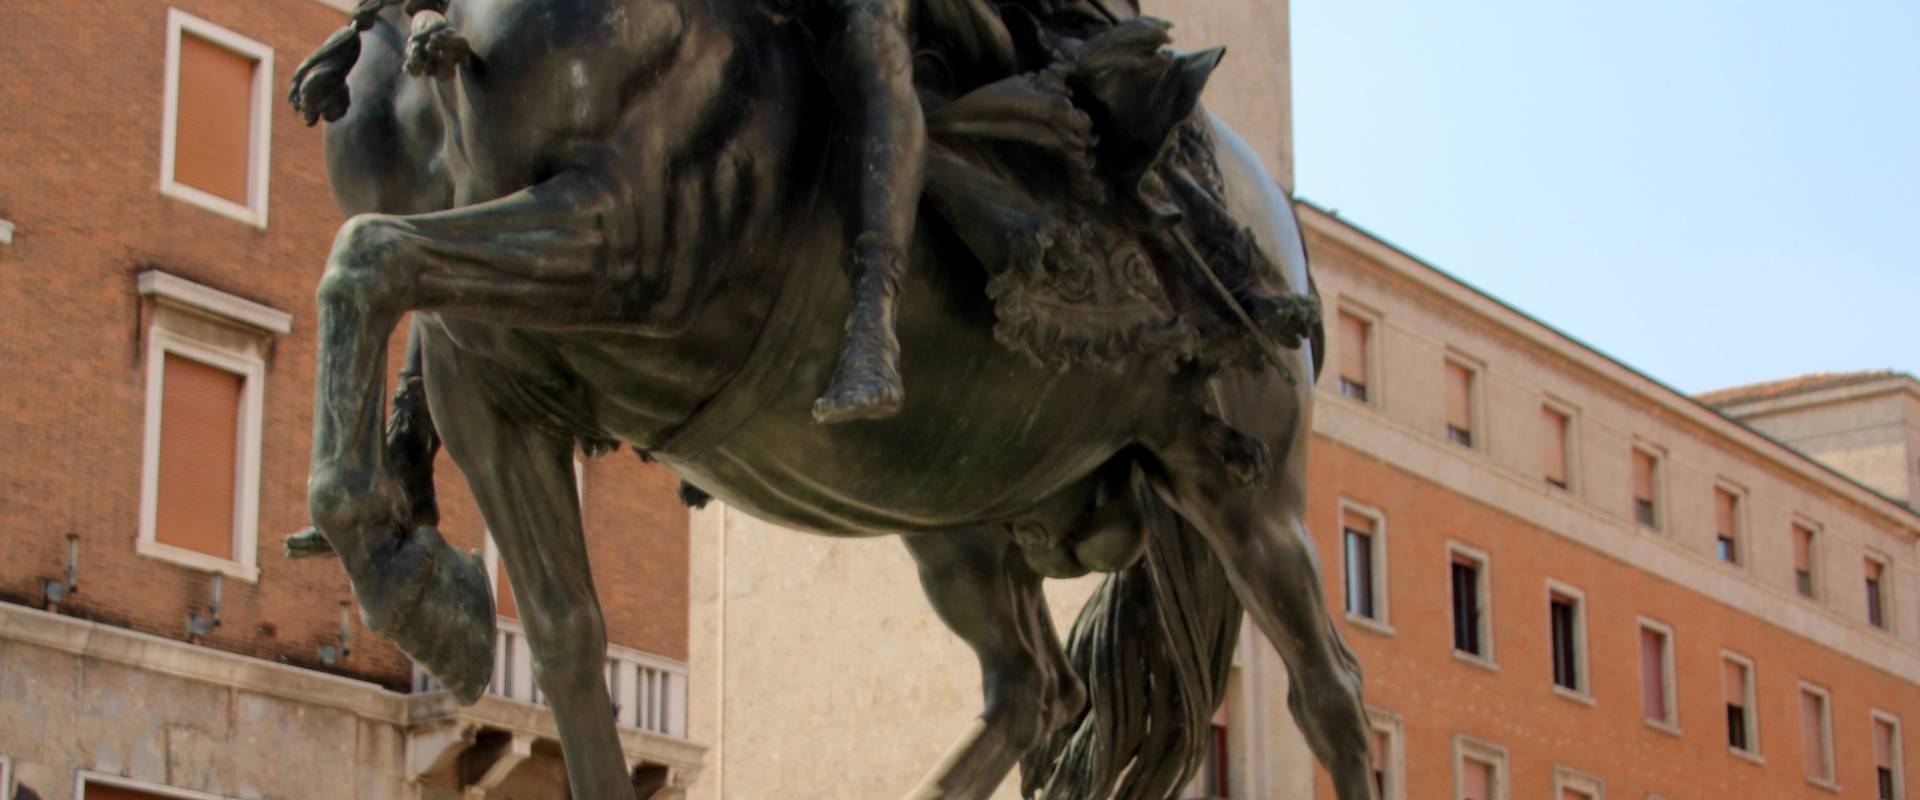 Francesco Mochi, Monumento in bronzo ad Alessandro Farnese 01 foto di Mongolo1984